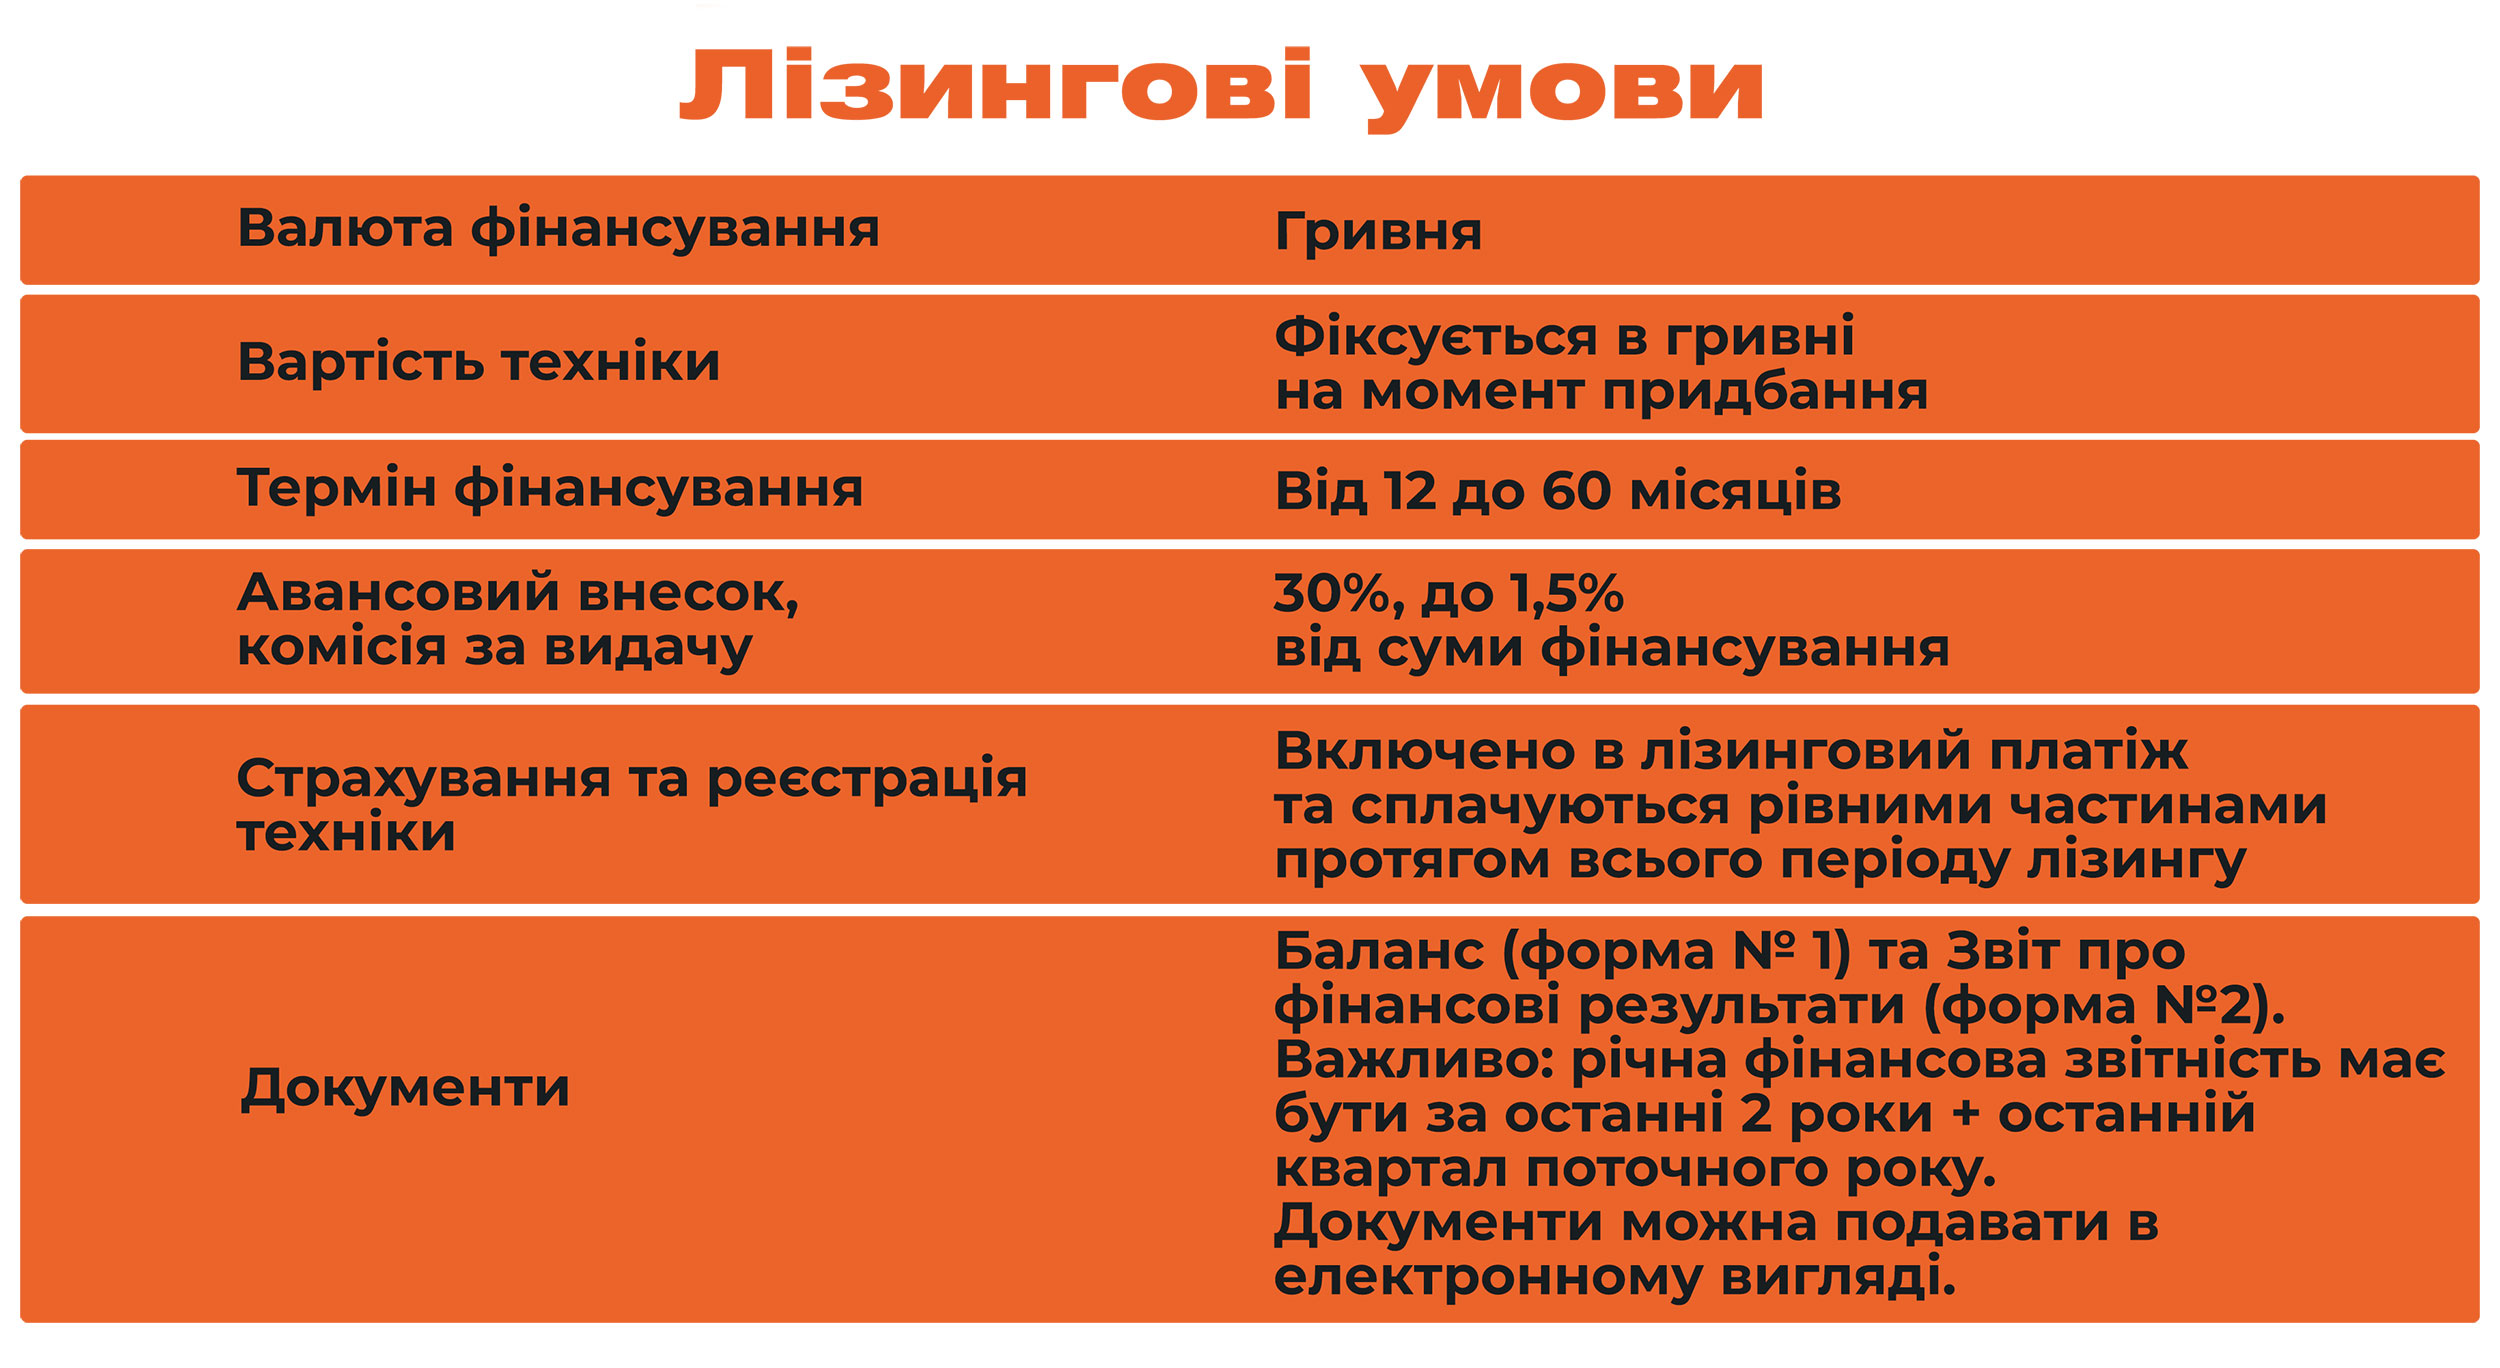 prohrama-lizynhu-dlia-navantazhuvachiv-vid-sklad-servis.jpg (478 KB)